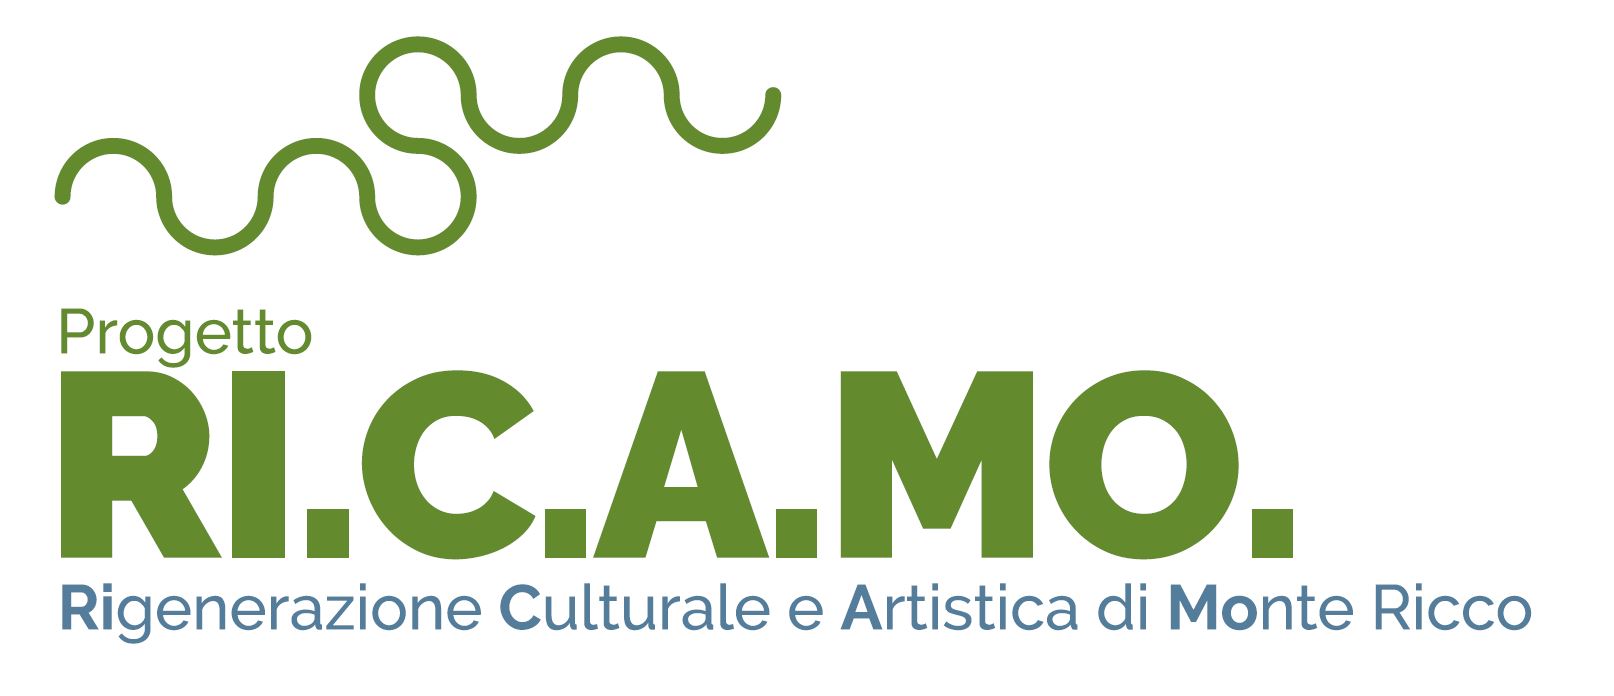 Rigenerazione Culturale e Artistica di Monte Ricco